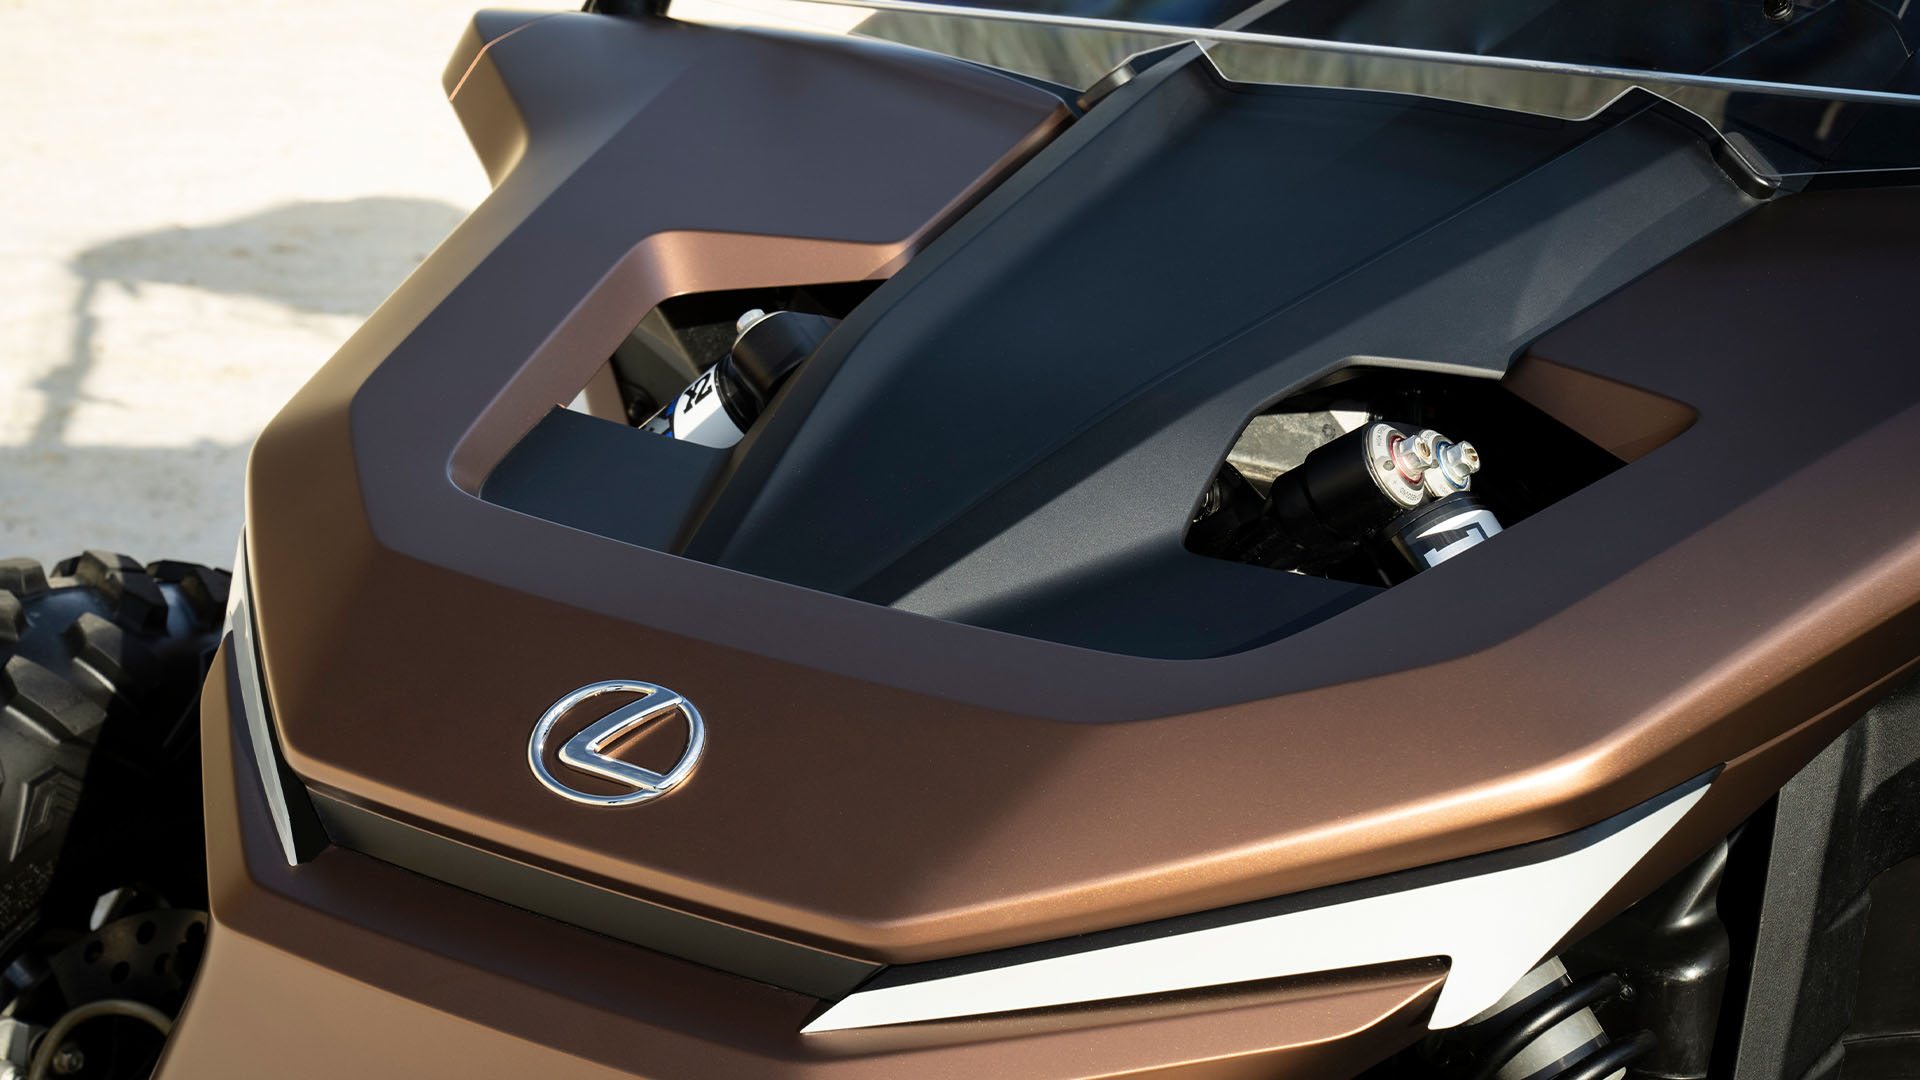 Lexus ROV Concept car bonnet